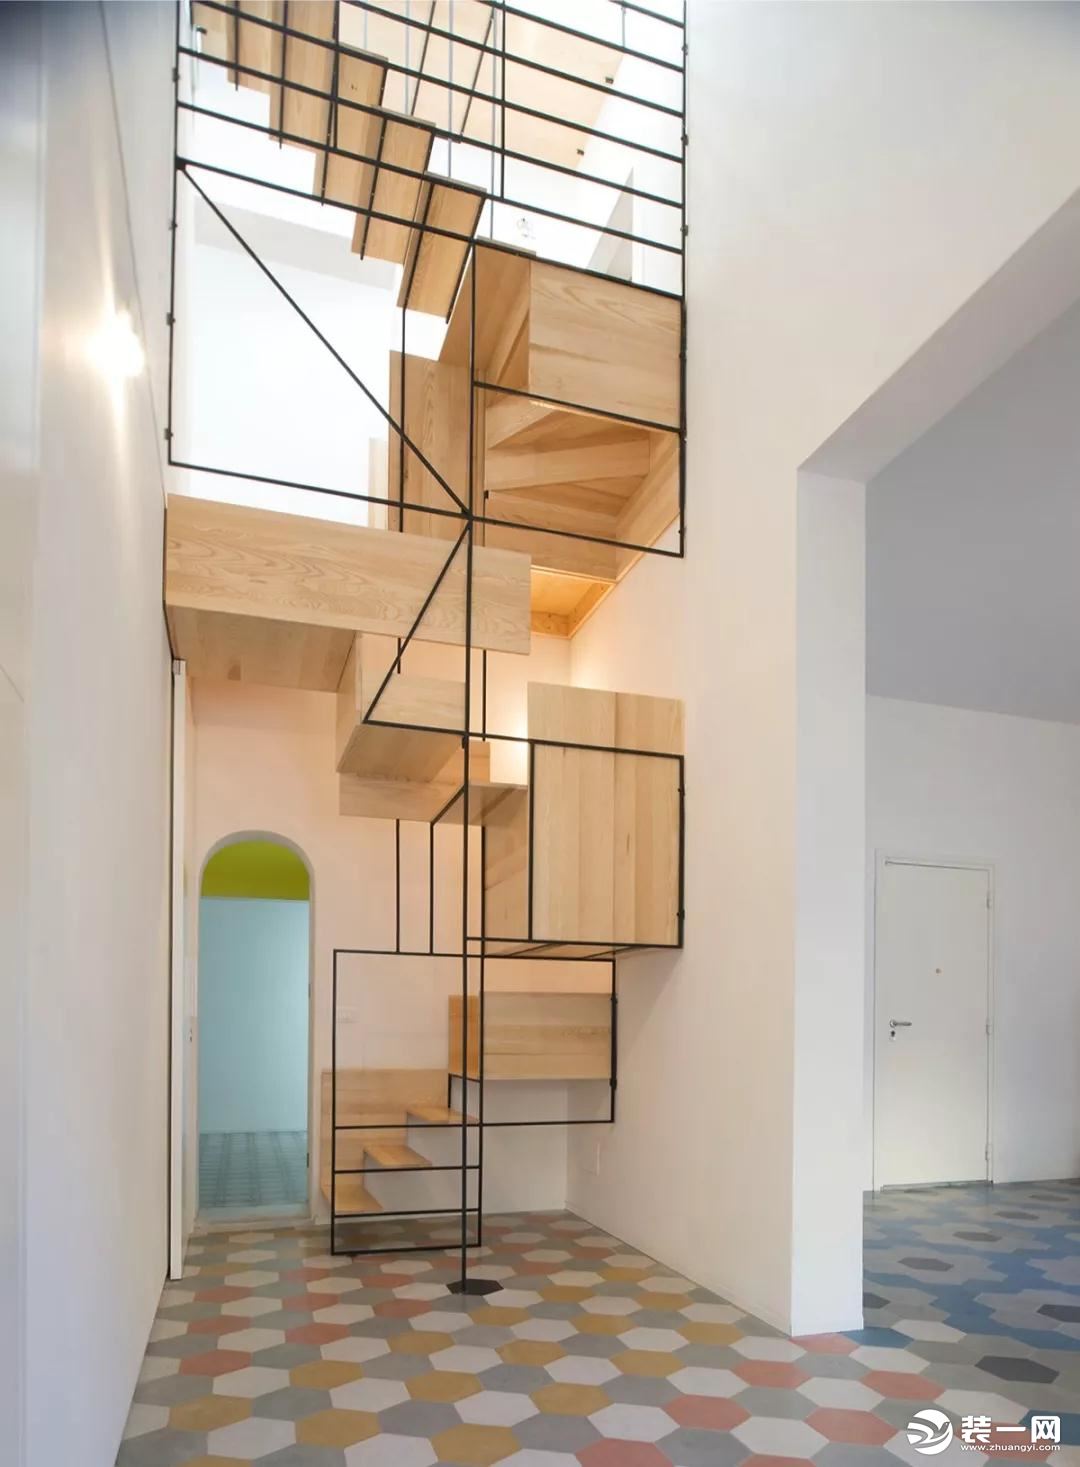 创意楼梯设计效果图